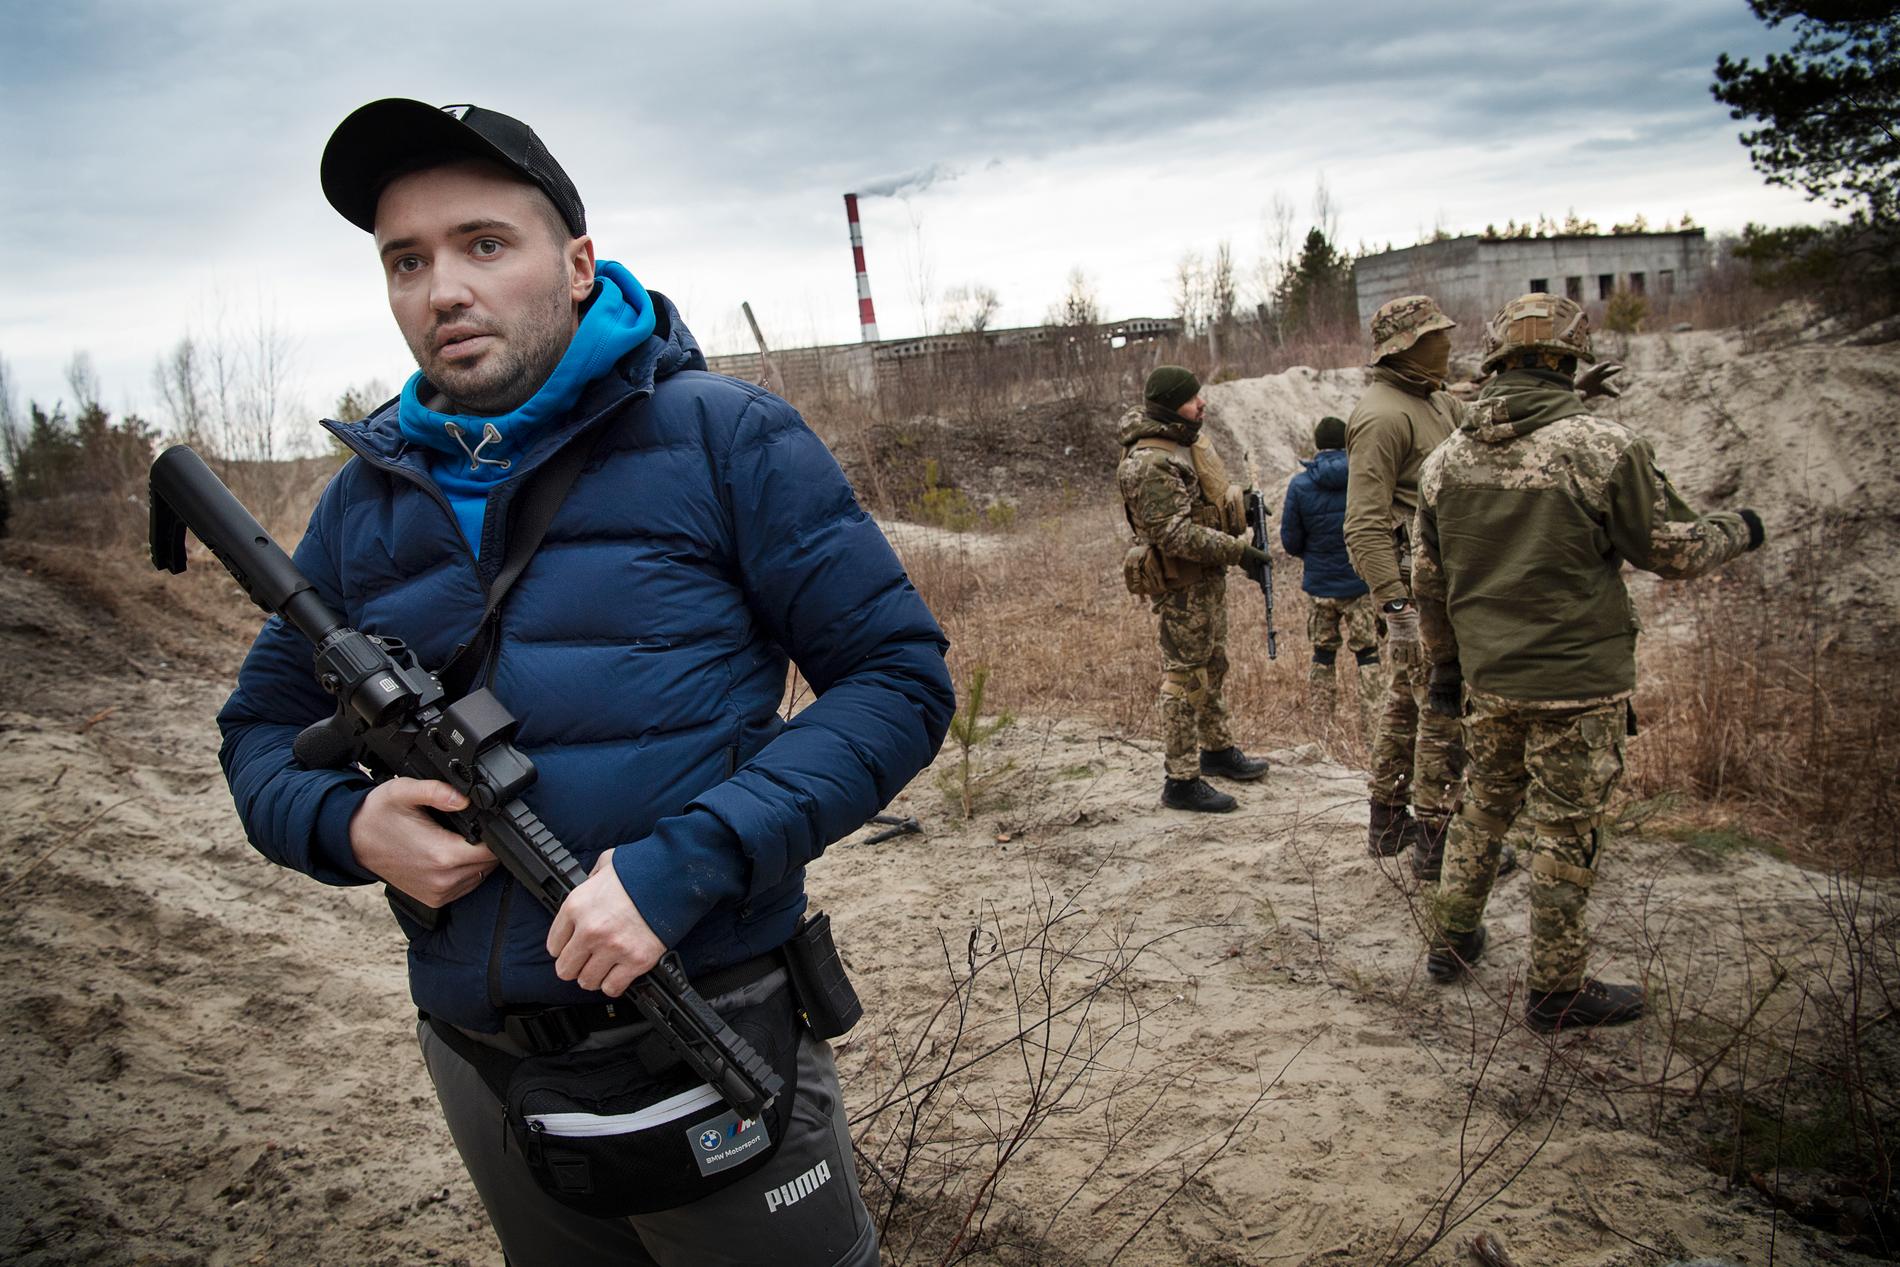 Ukrainaren Vitalij Kavalchuk, 37, är egentligen schampoförsäljare – nu vapentränar han för att kunna försvara för sitt land: ”Rysslands ledare kommer att ta allt från oss om vi inte gör hårt motstånd. Jag har fru och ett elvamånadersbarn att försvara. Då måste jag vara beredd att betala vilket pris som helst”, säger han. 